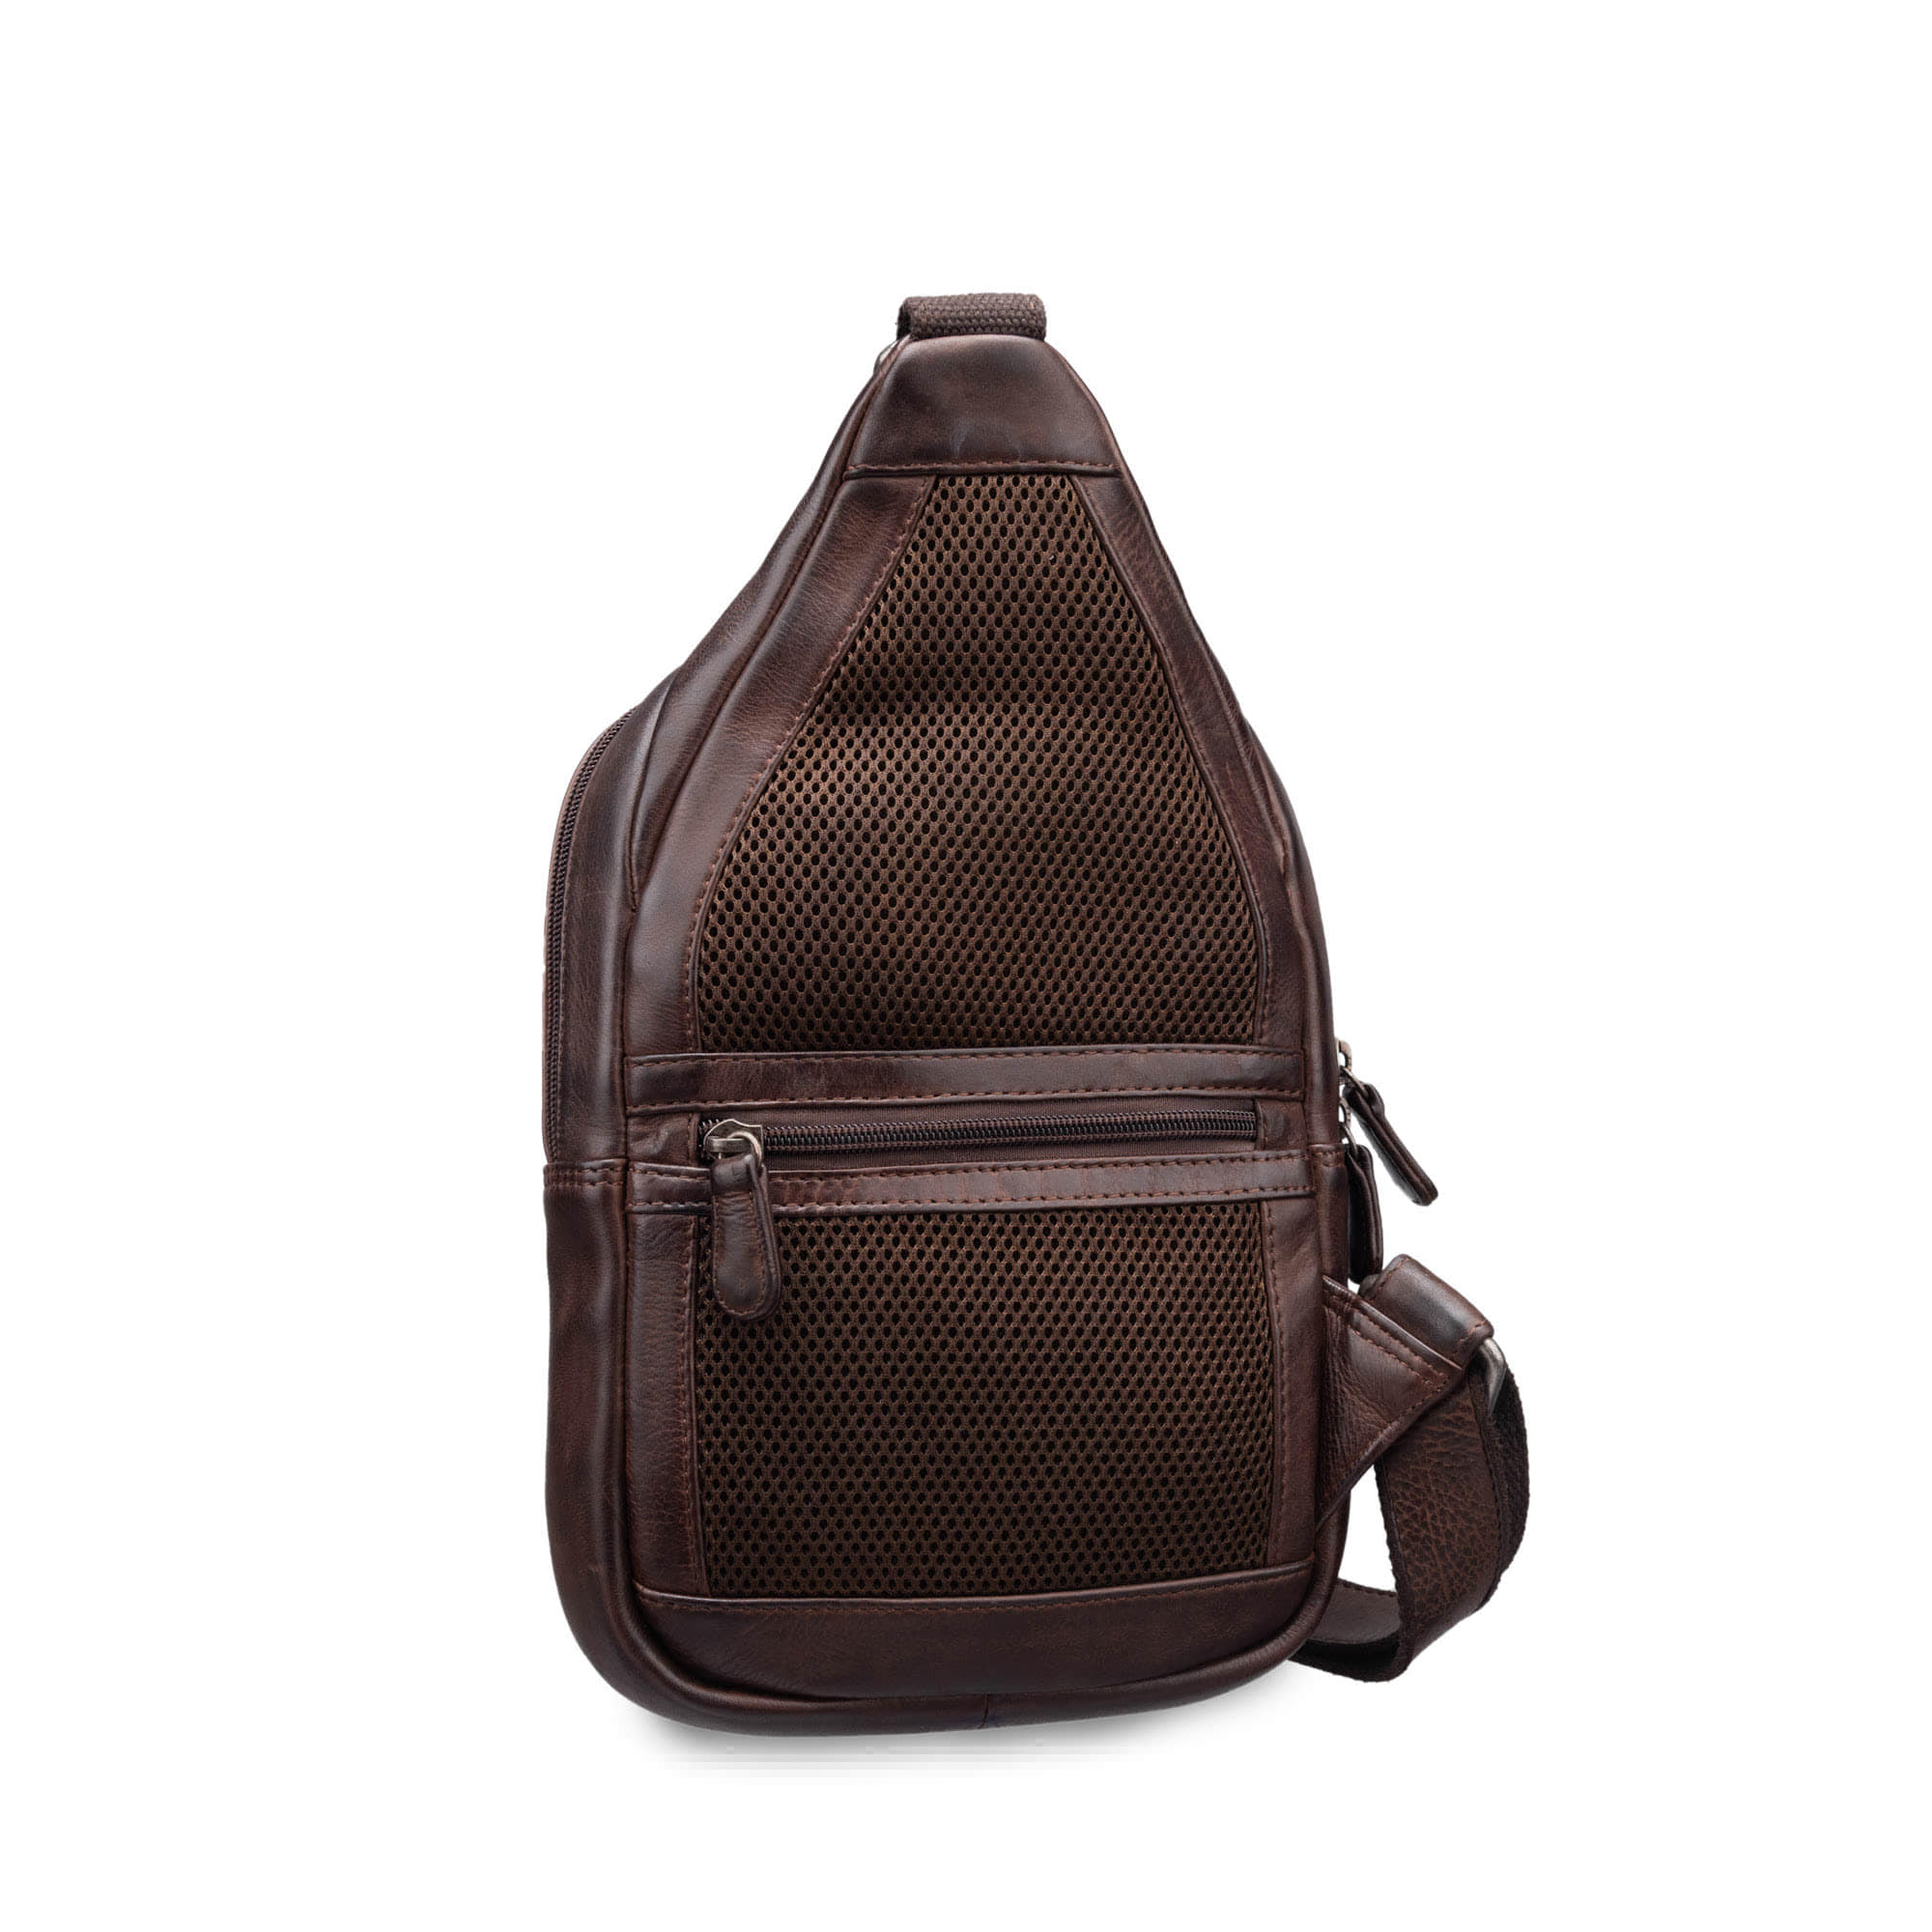 Др.Коффер B402824-248-09 рюкзак, цвет коричневый - фото 3